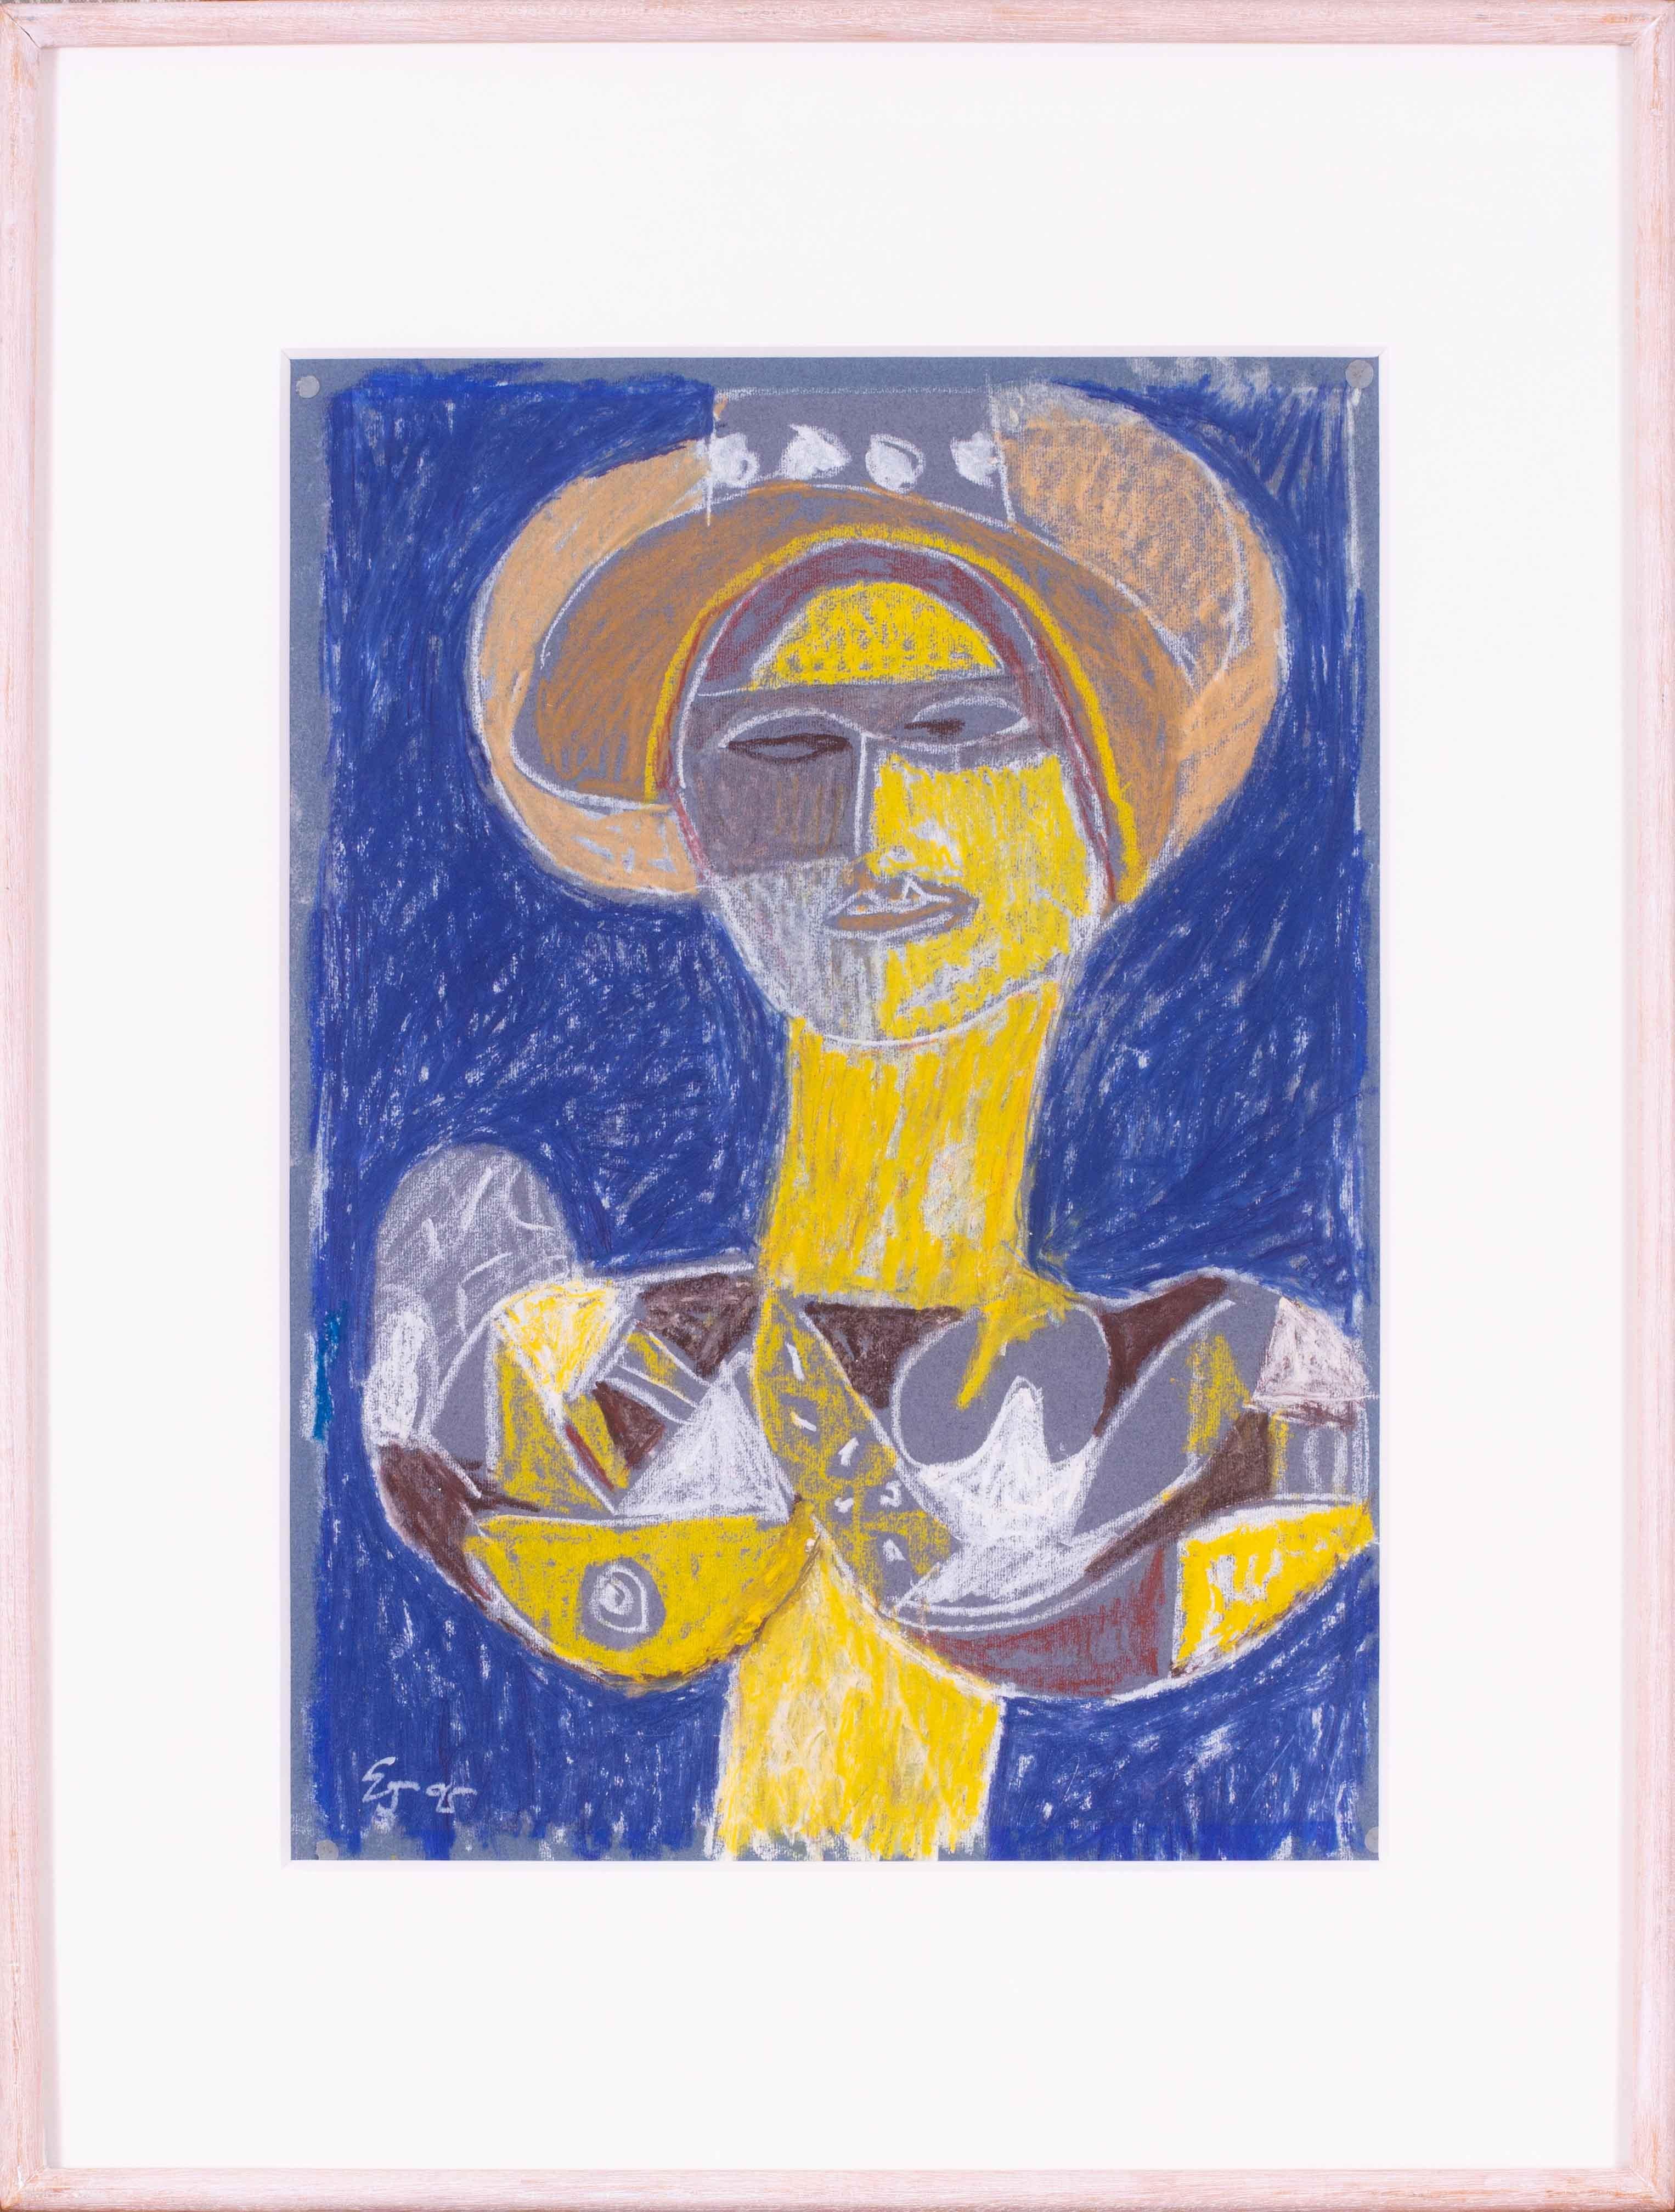 Ein wirklich beeindruckendes und originelles Werk des britischen Künstlers Ewart Johns (1923-2013) aus der Mitte des Jahrhunderts.  Dieses auffällige, in kontrastreichen Gelb- und Blautönen gehaltene Werk wurde 1995 von dem Künstler geschaffen. Es